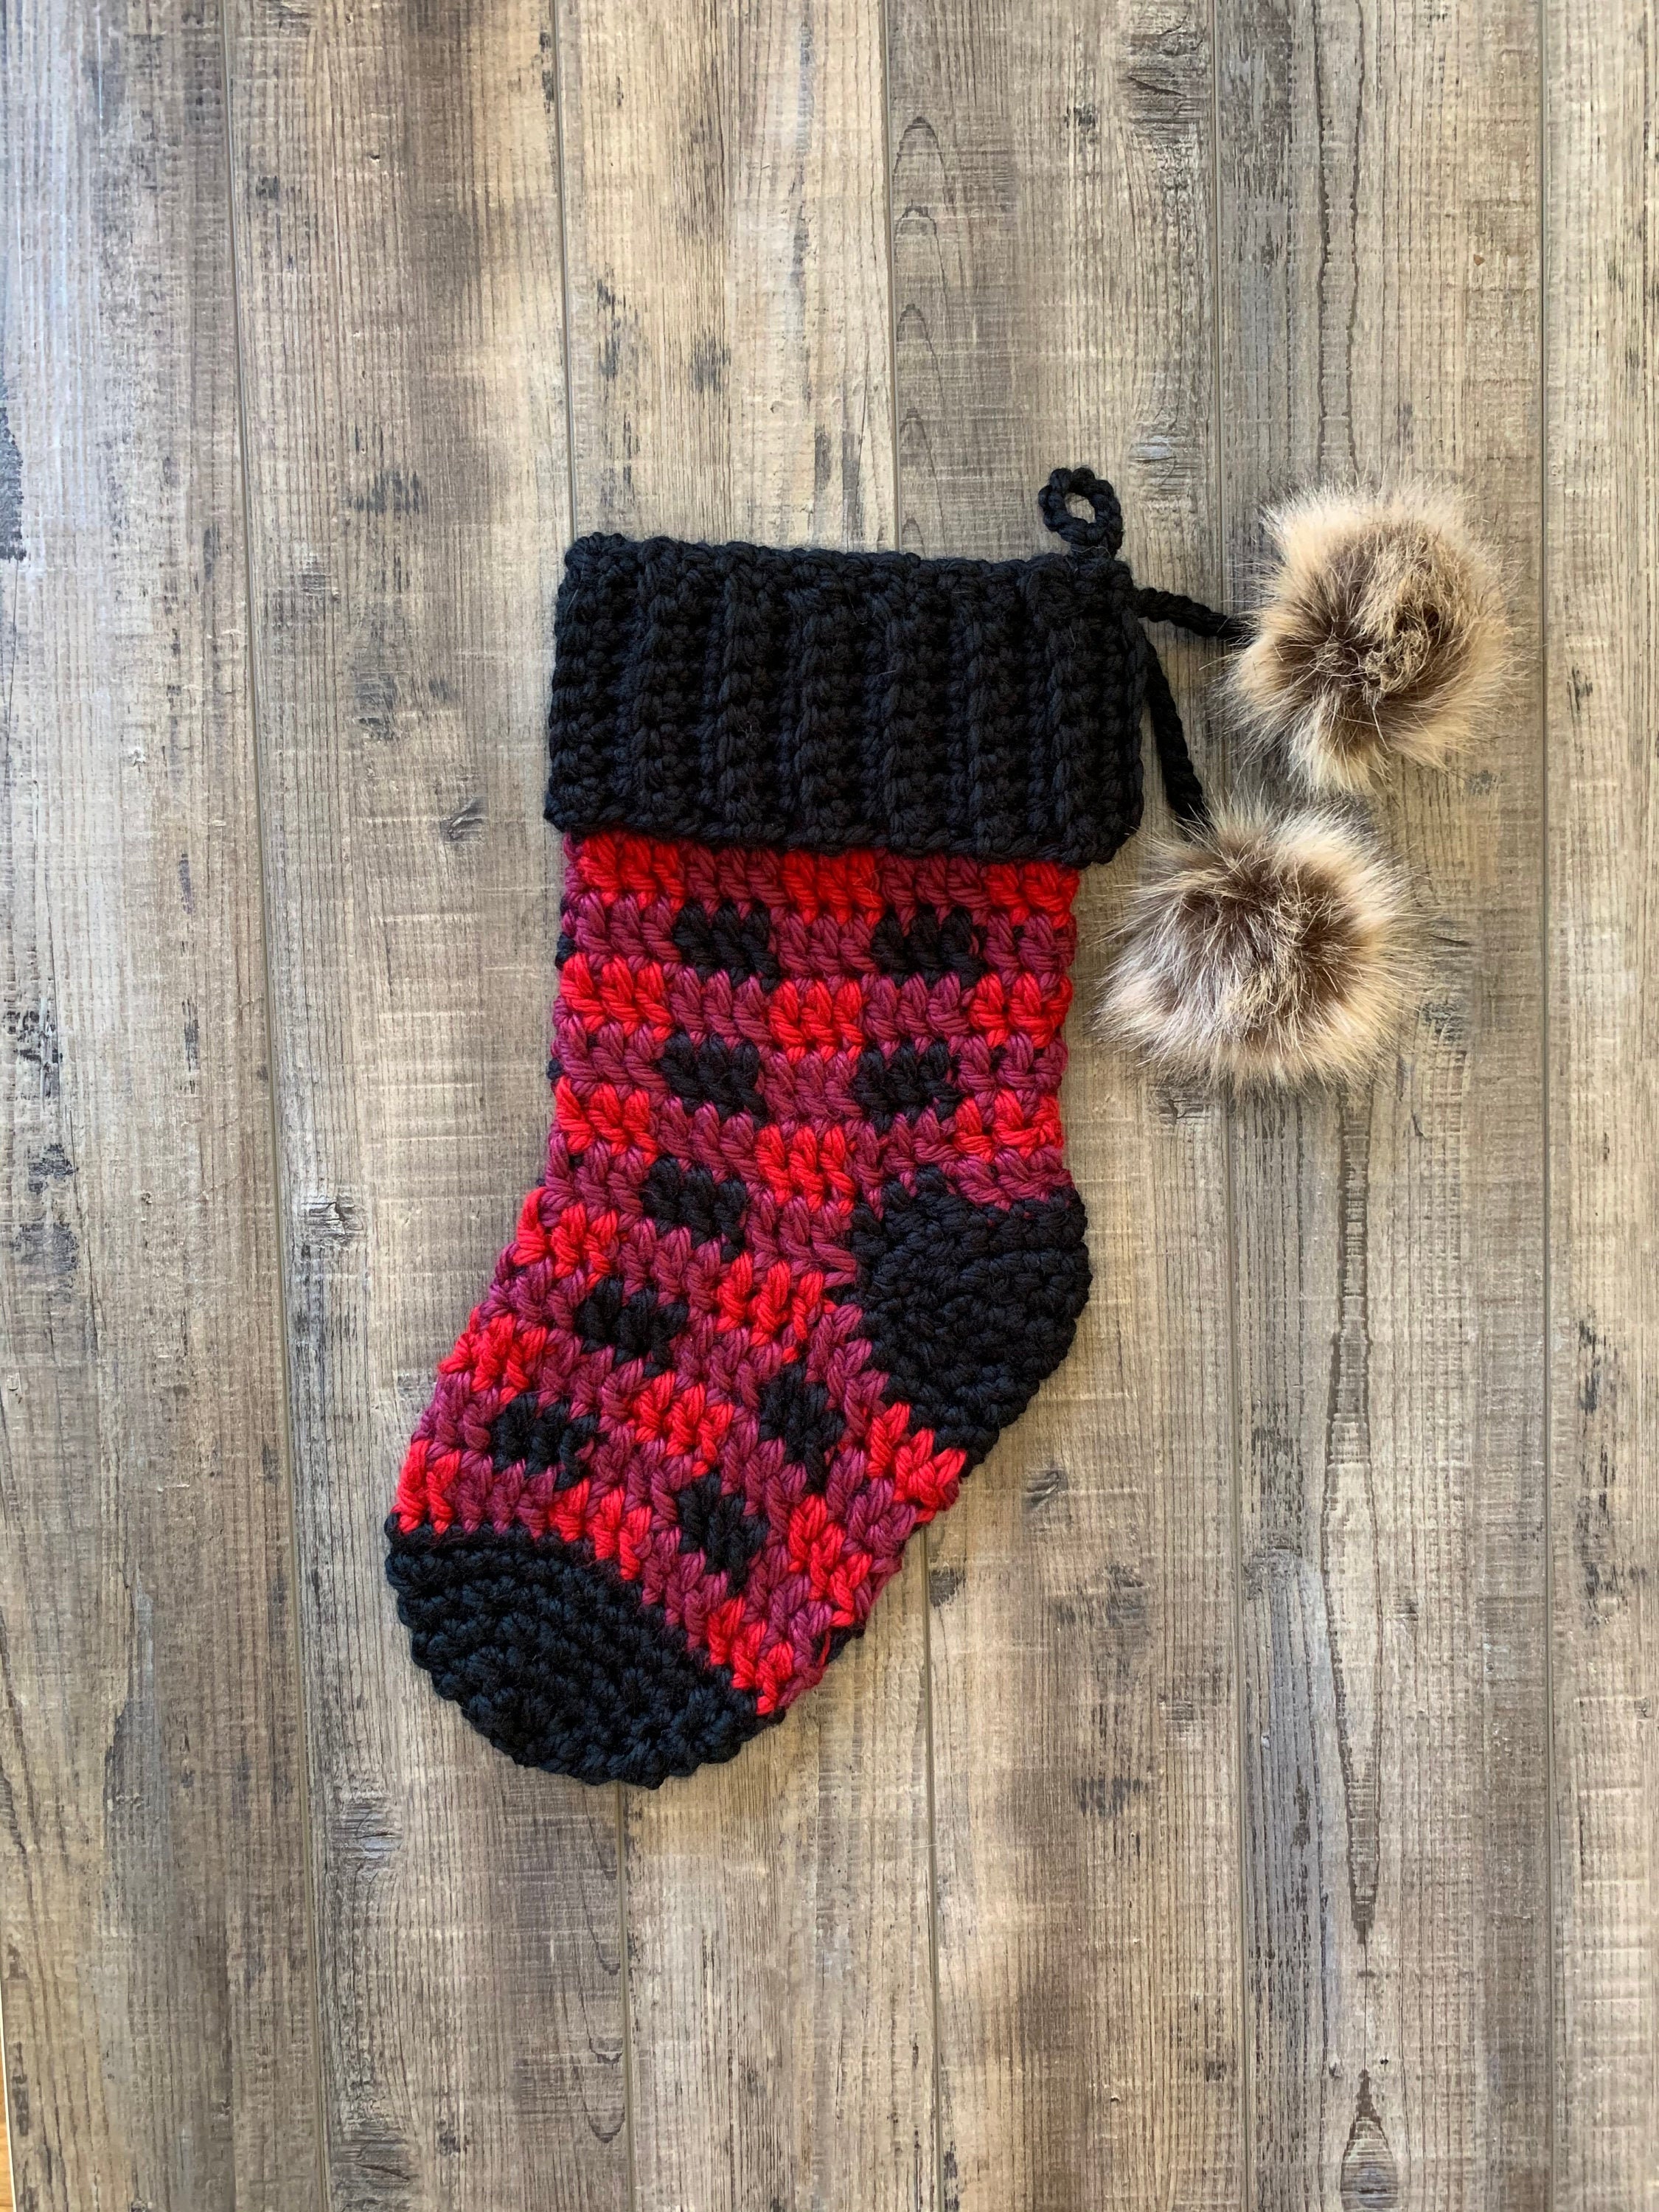 Crochet Buffalo Plaid Stocking - Crochet Pattern